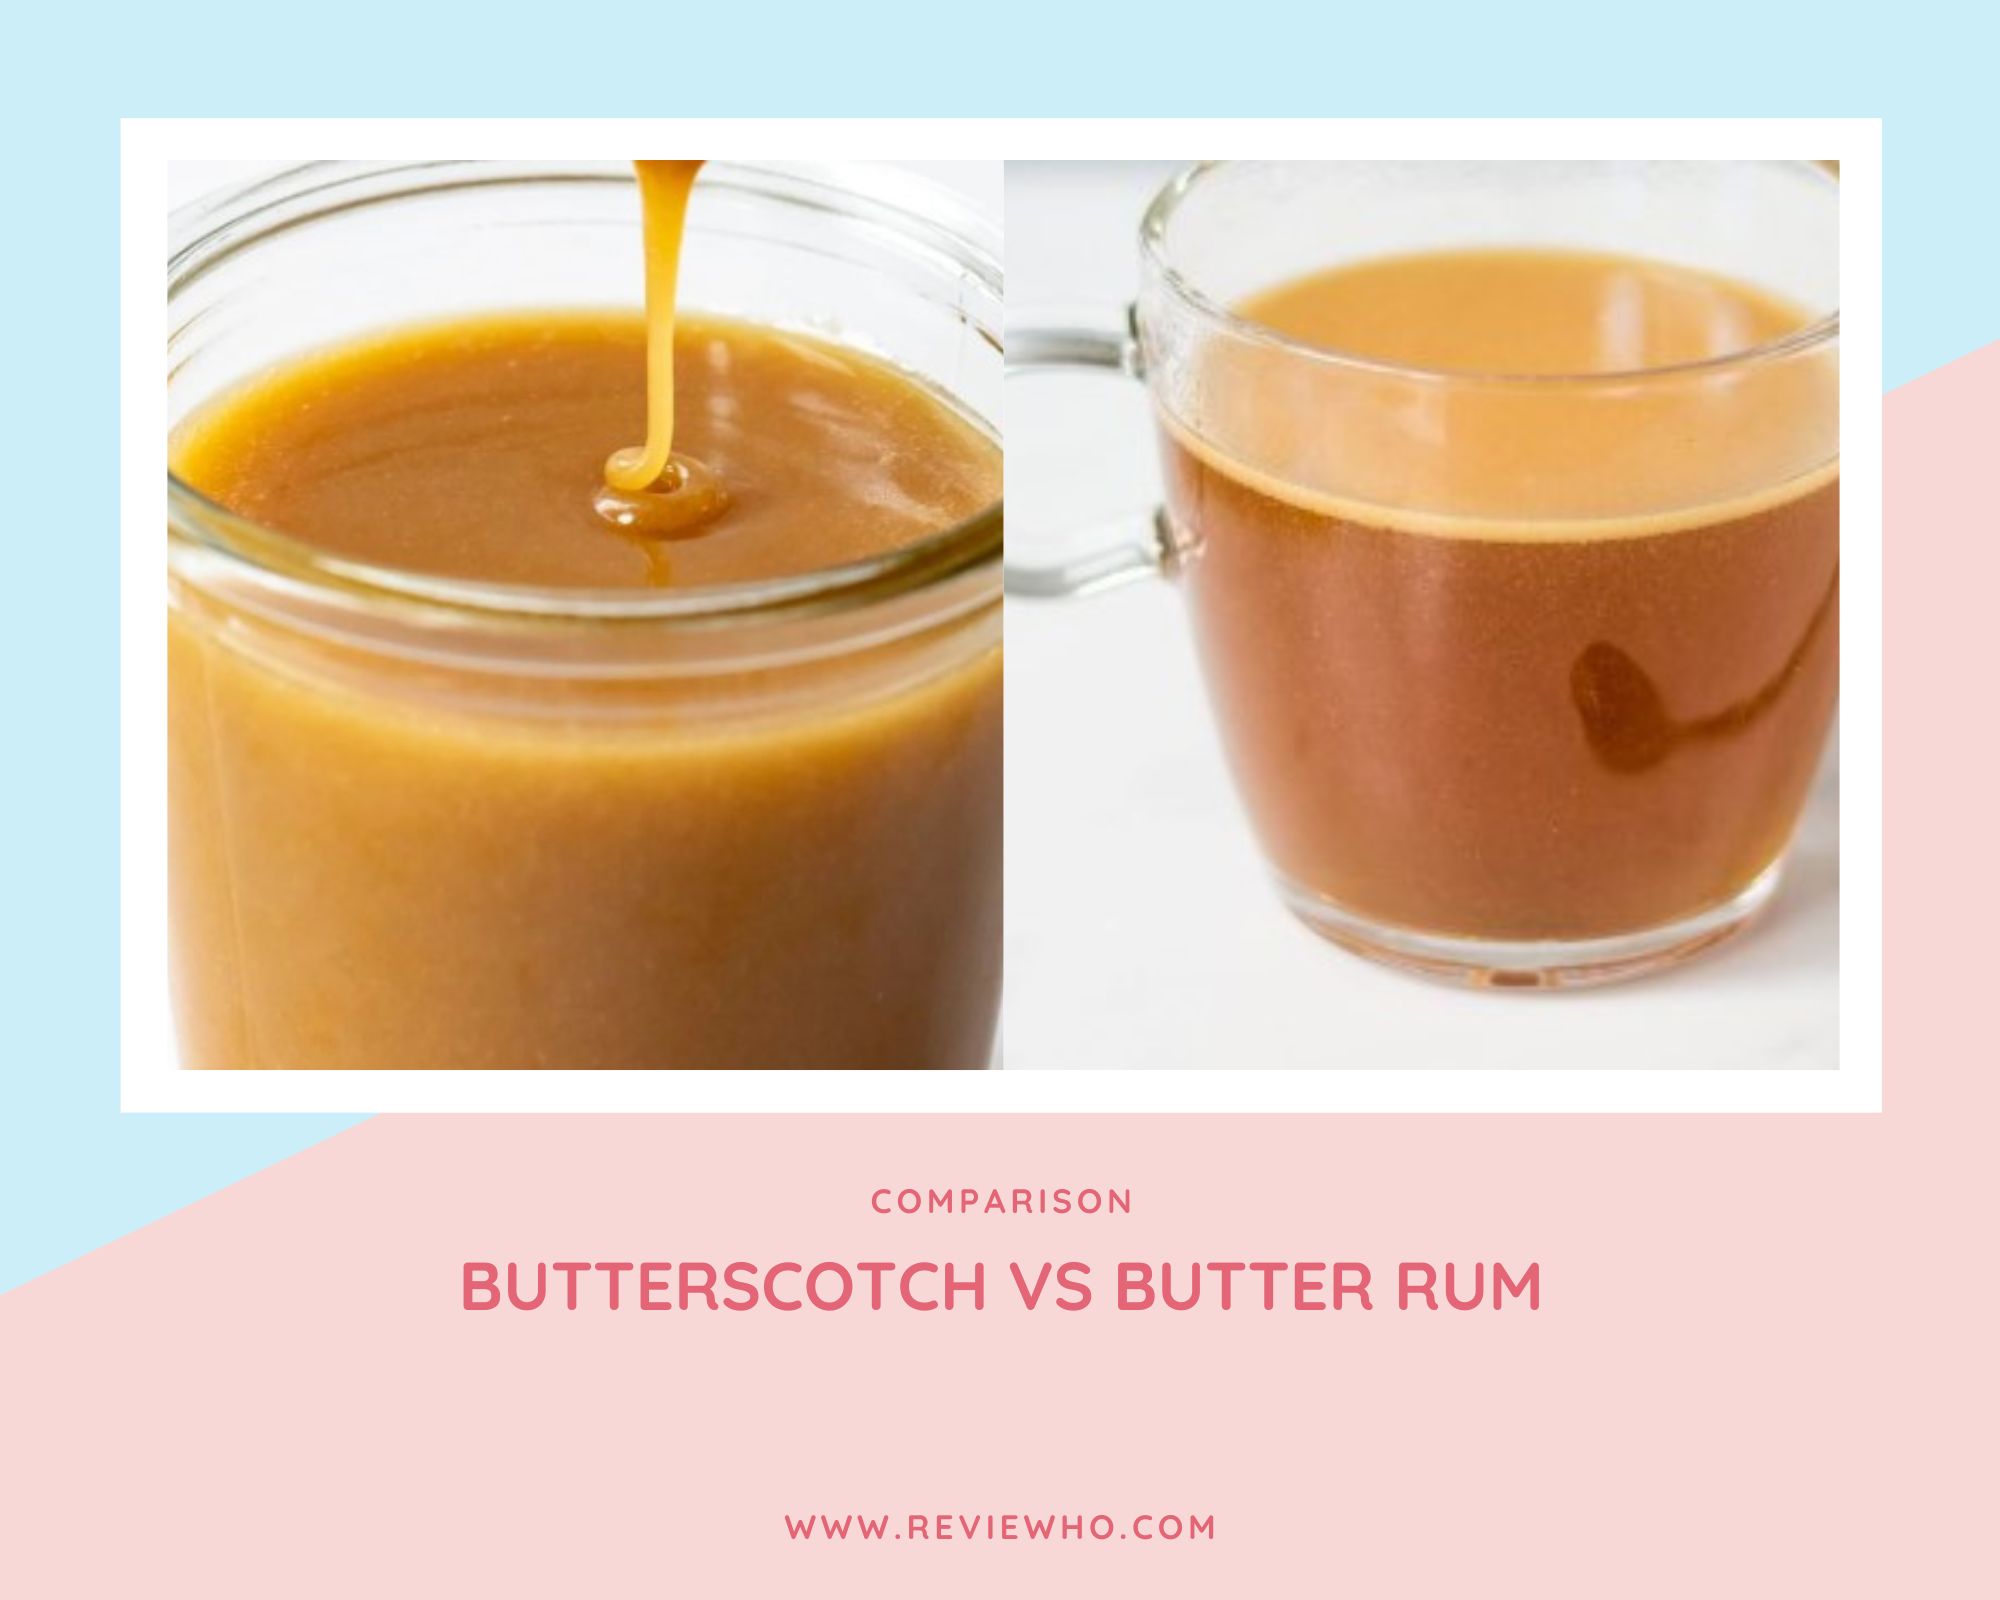 Butterscotch vs Butter Rum